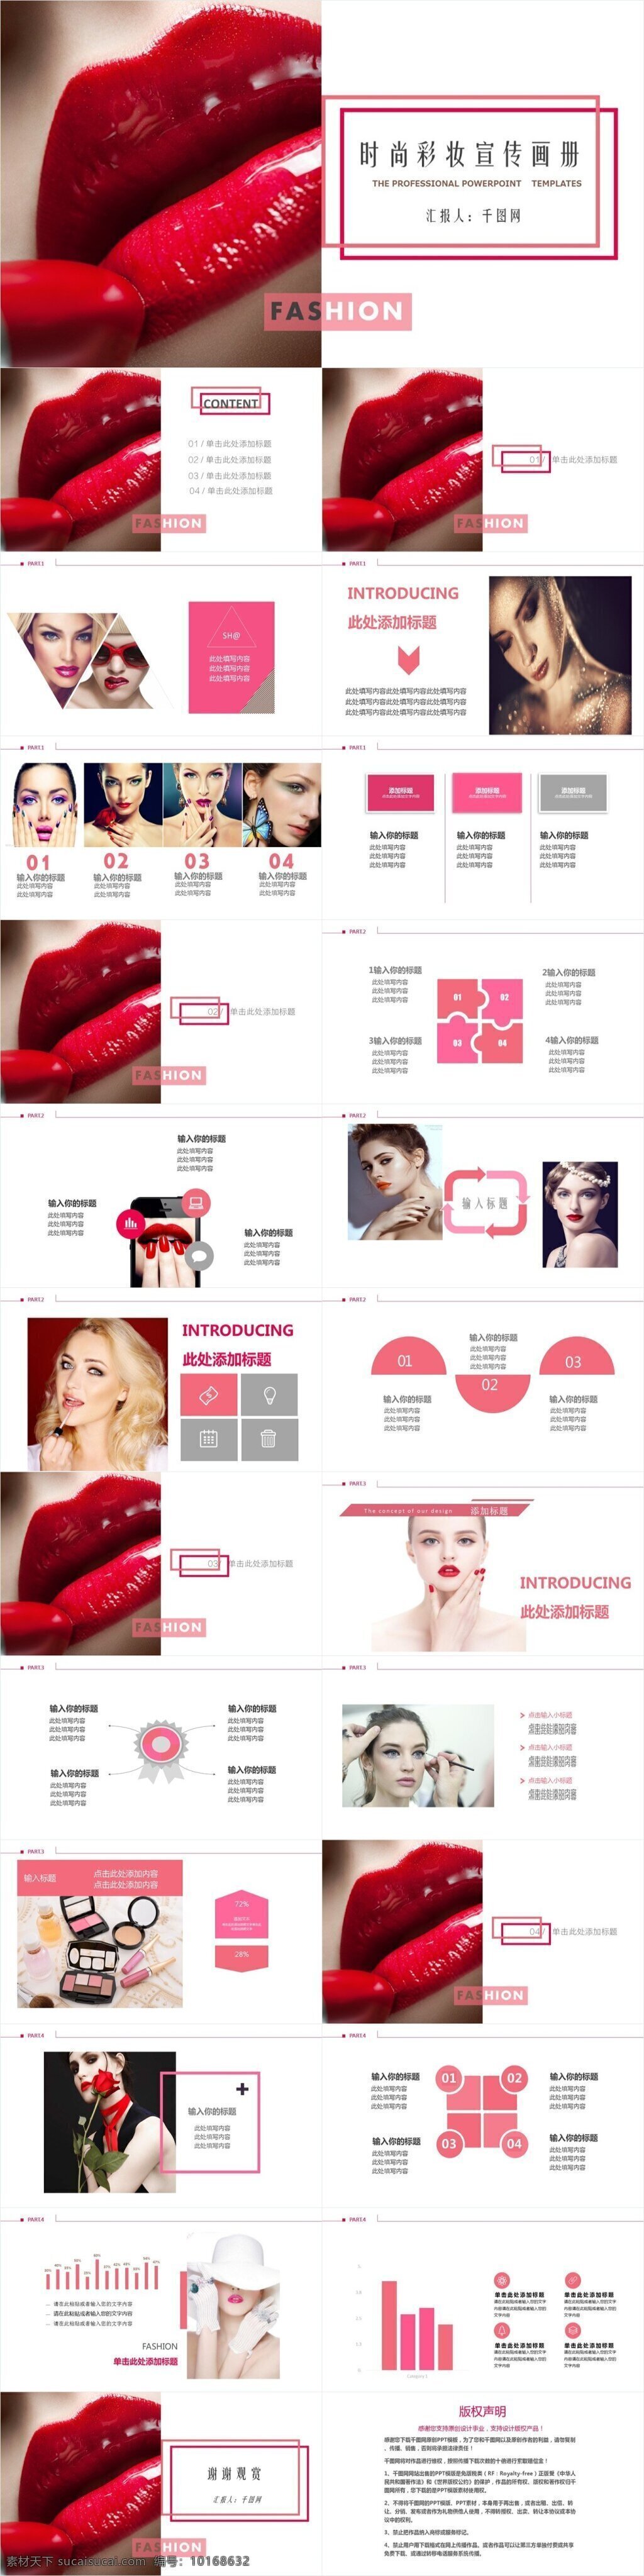 时尚 彩妆 宣传画册 模板 潮流 美妆 发布 上新 ppt模板